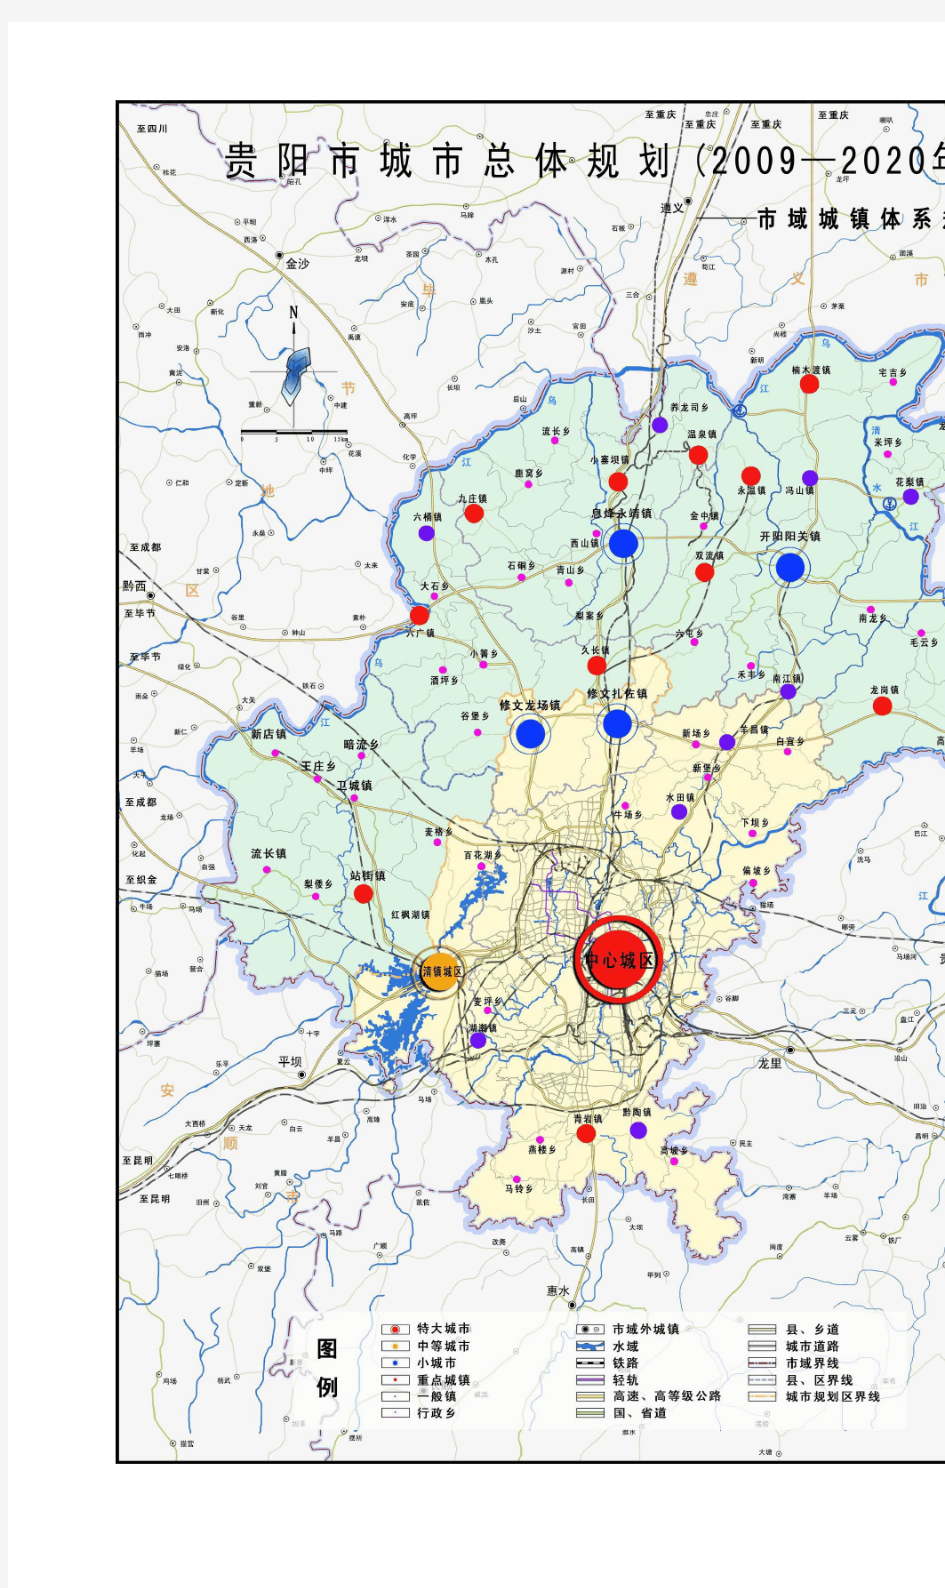 《贵阳市城市总体规划(2009-2020年)》附图[1]